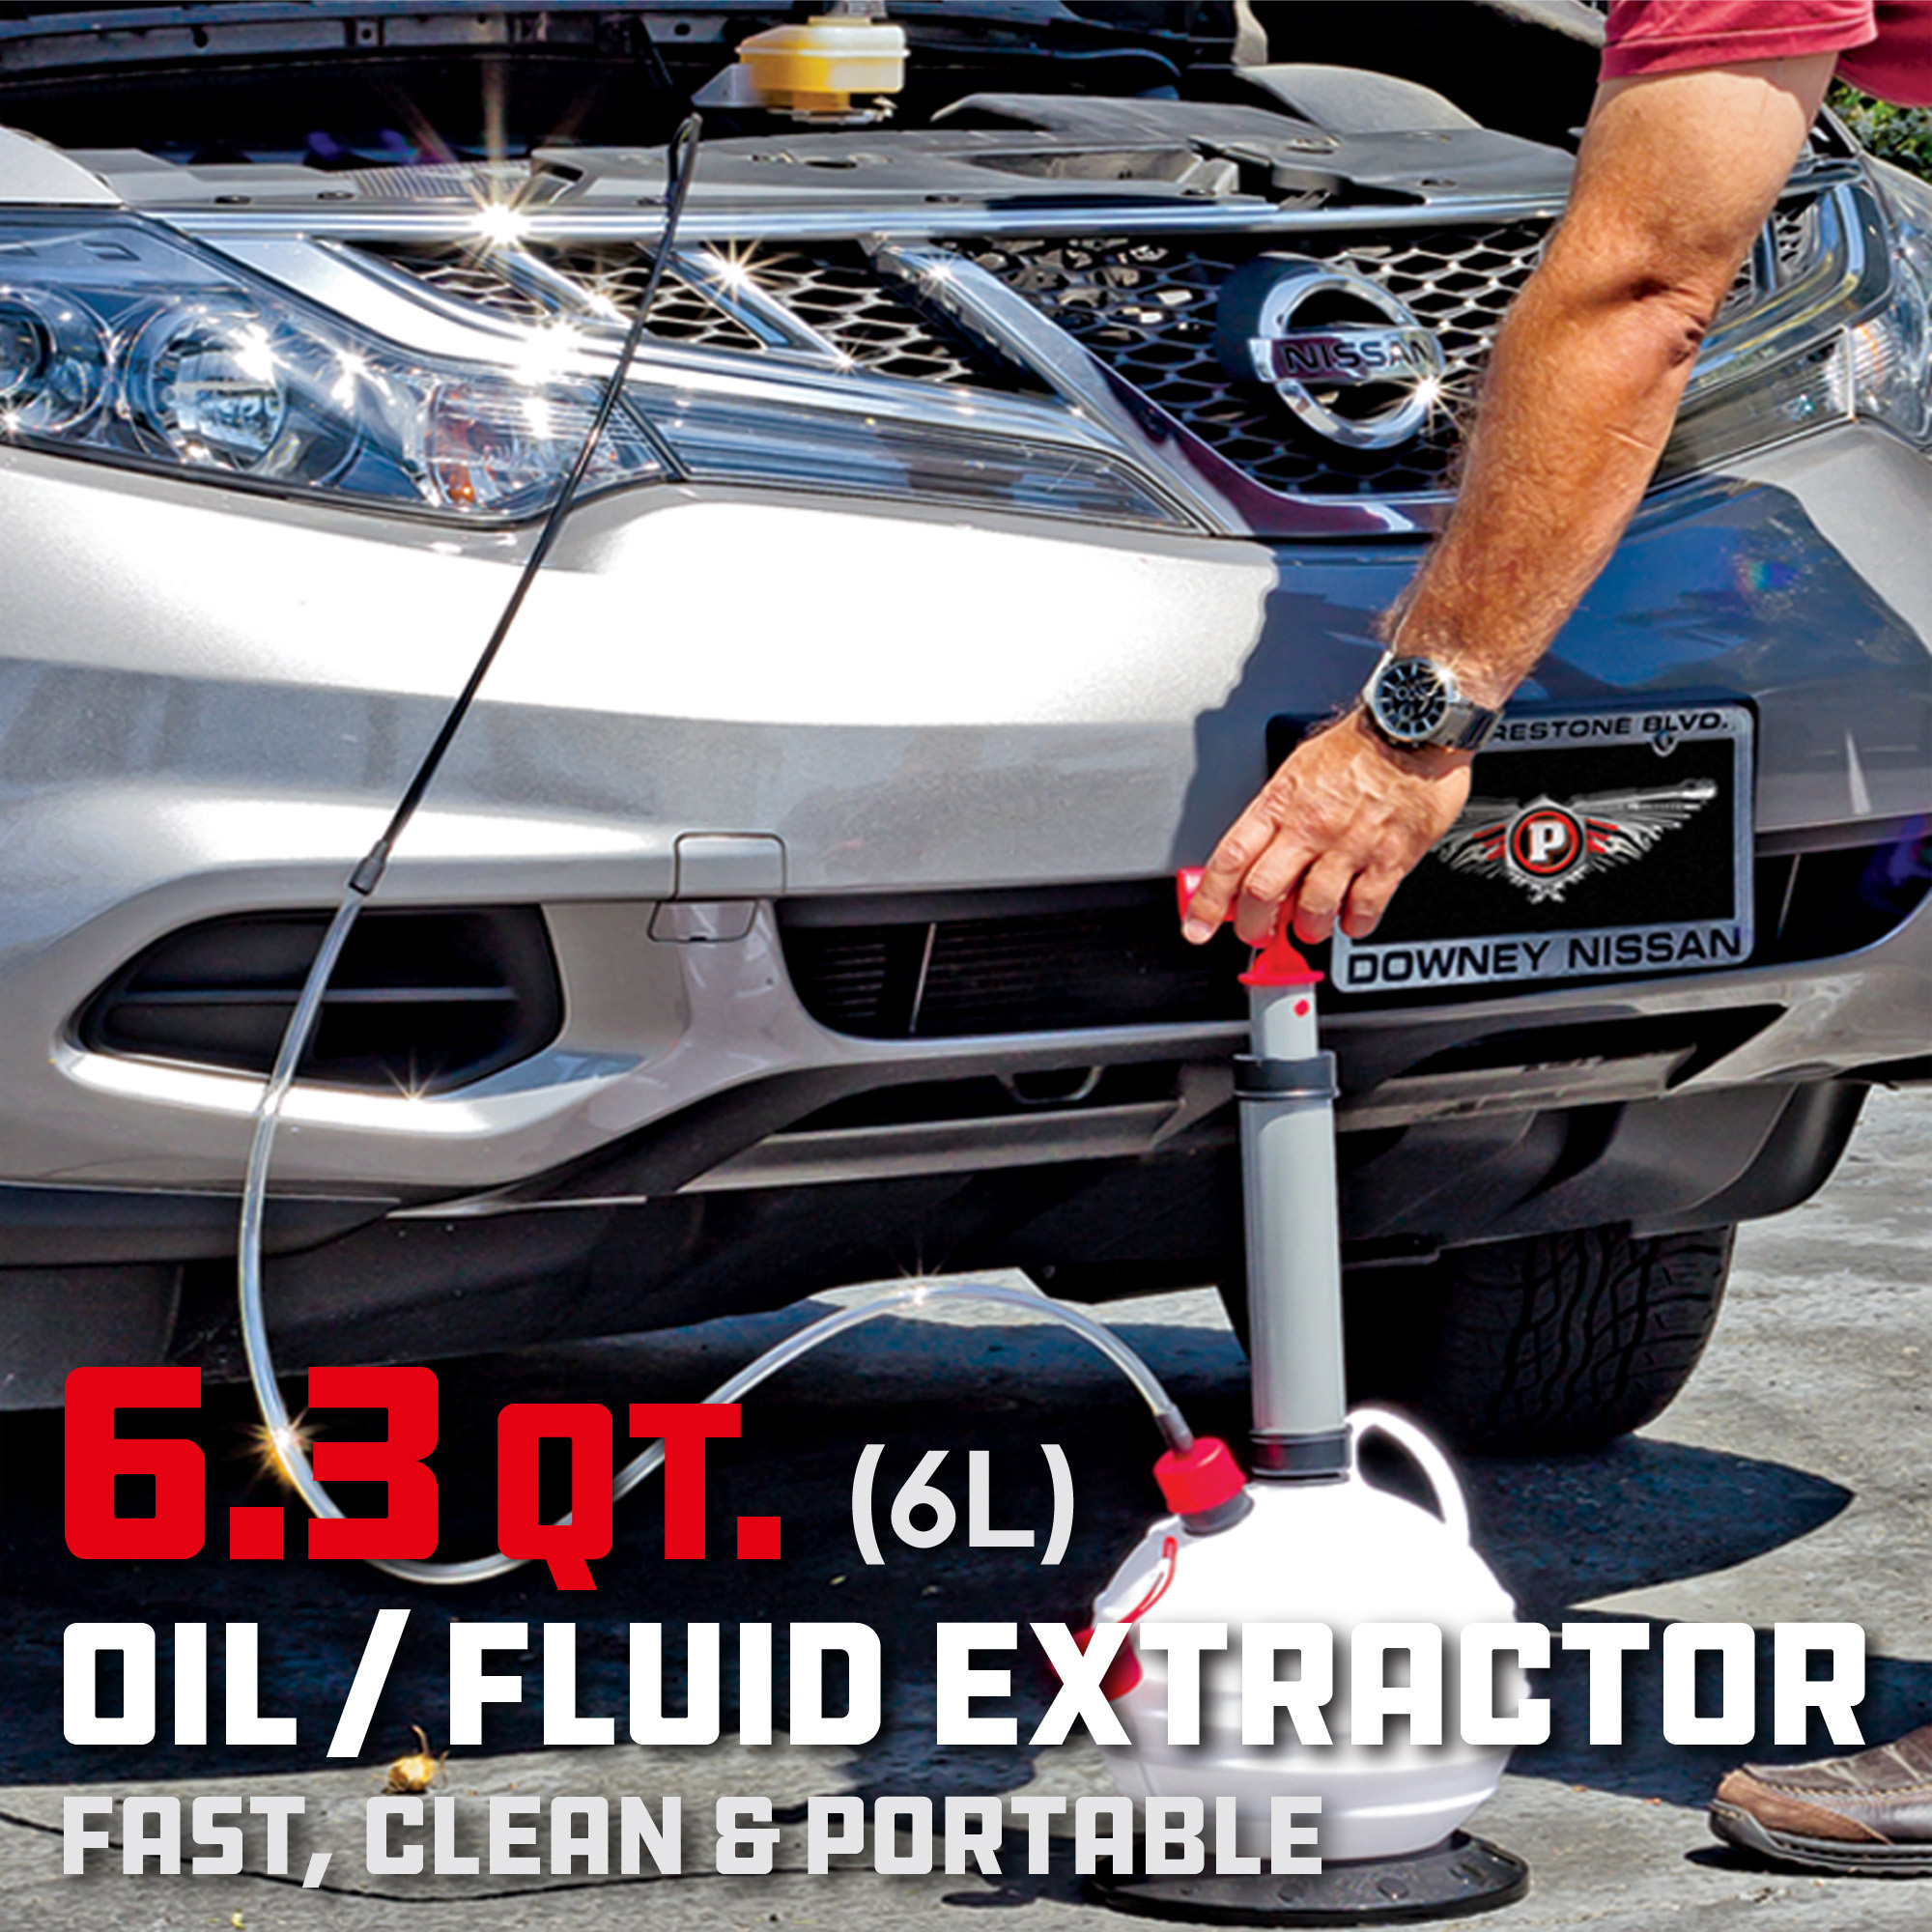 Oil/Fluid Extractor 6Ltr